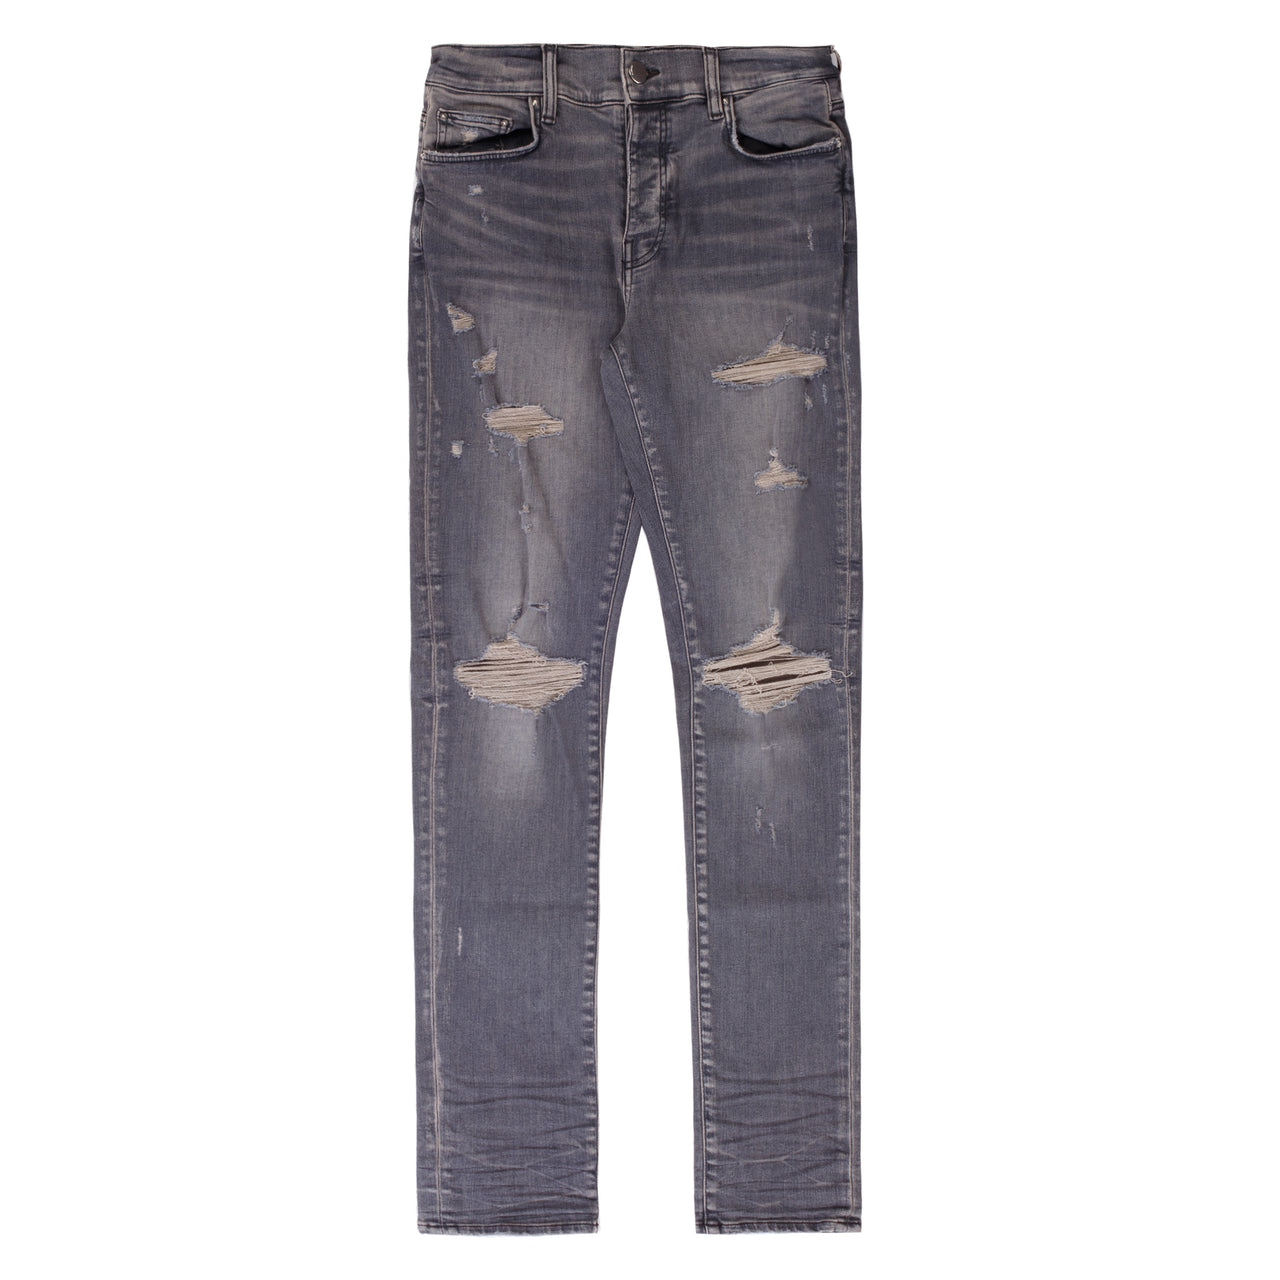 Amiri MX-1 Jeans Grey Distressed